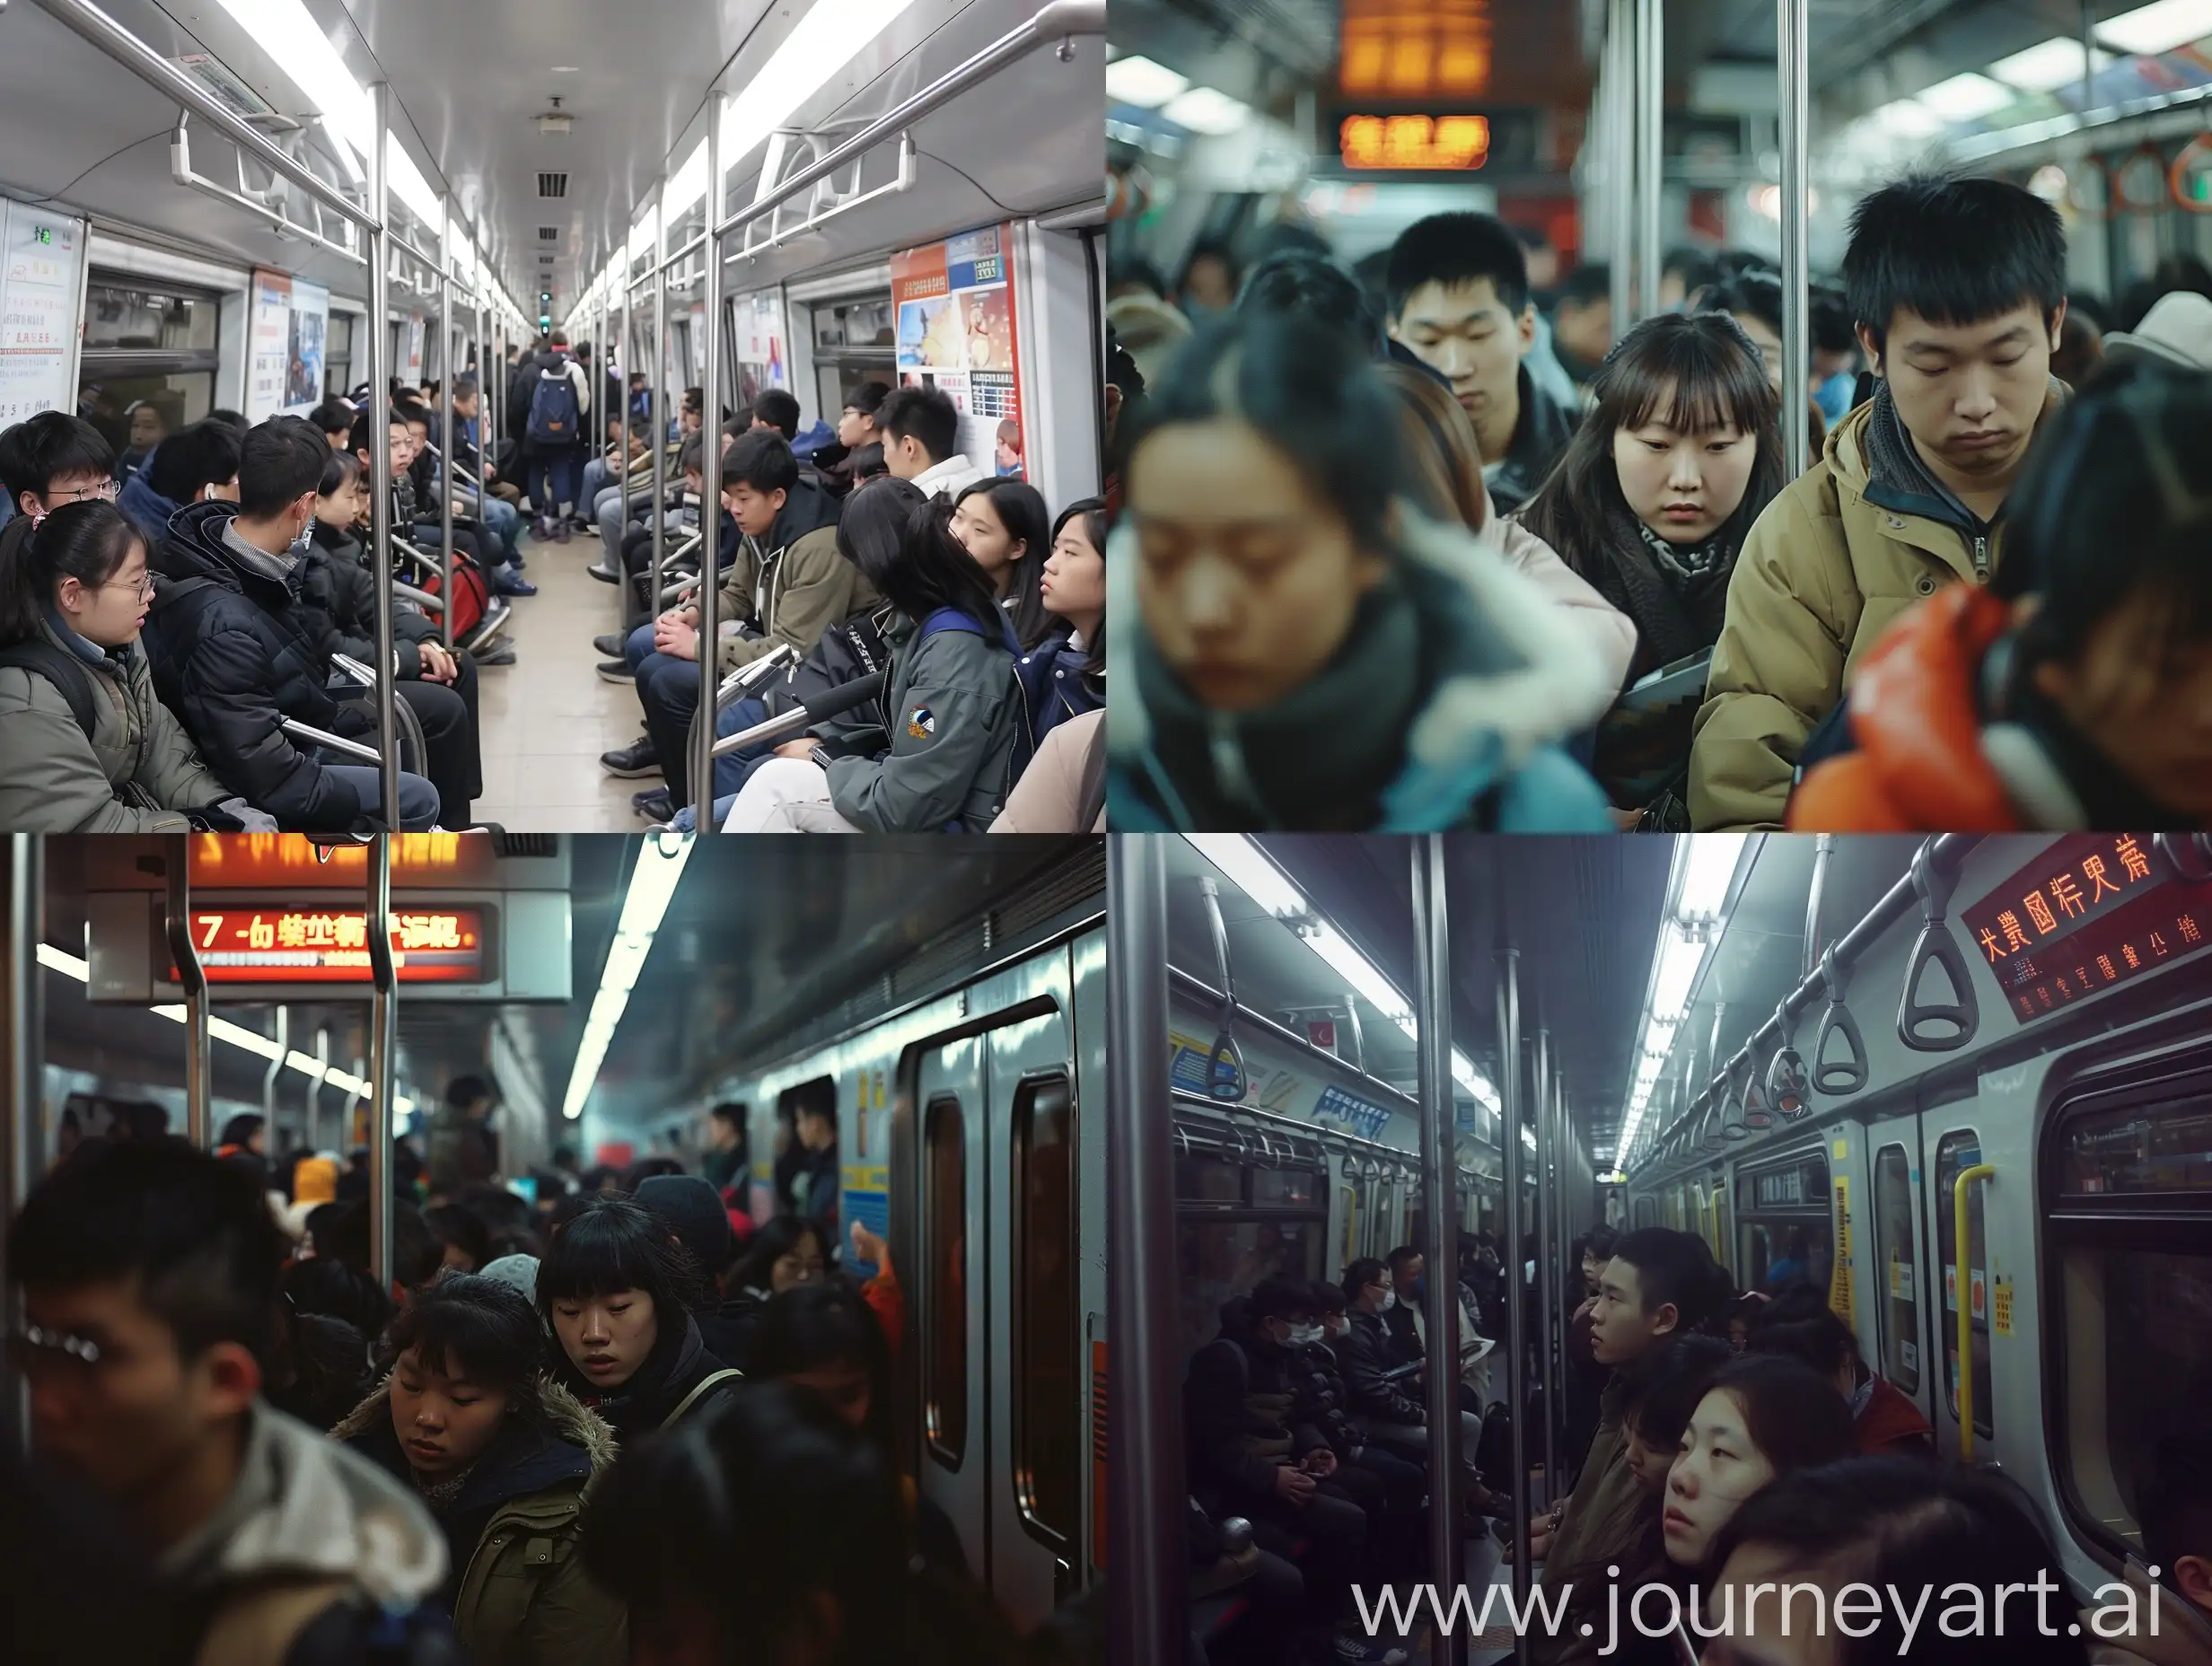 帮我设计一个图片，地球探测与信息技术的学生在北京
早上7点挤地铁